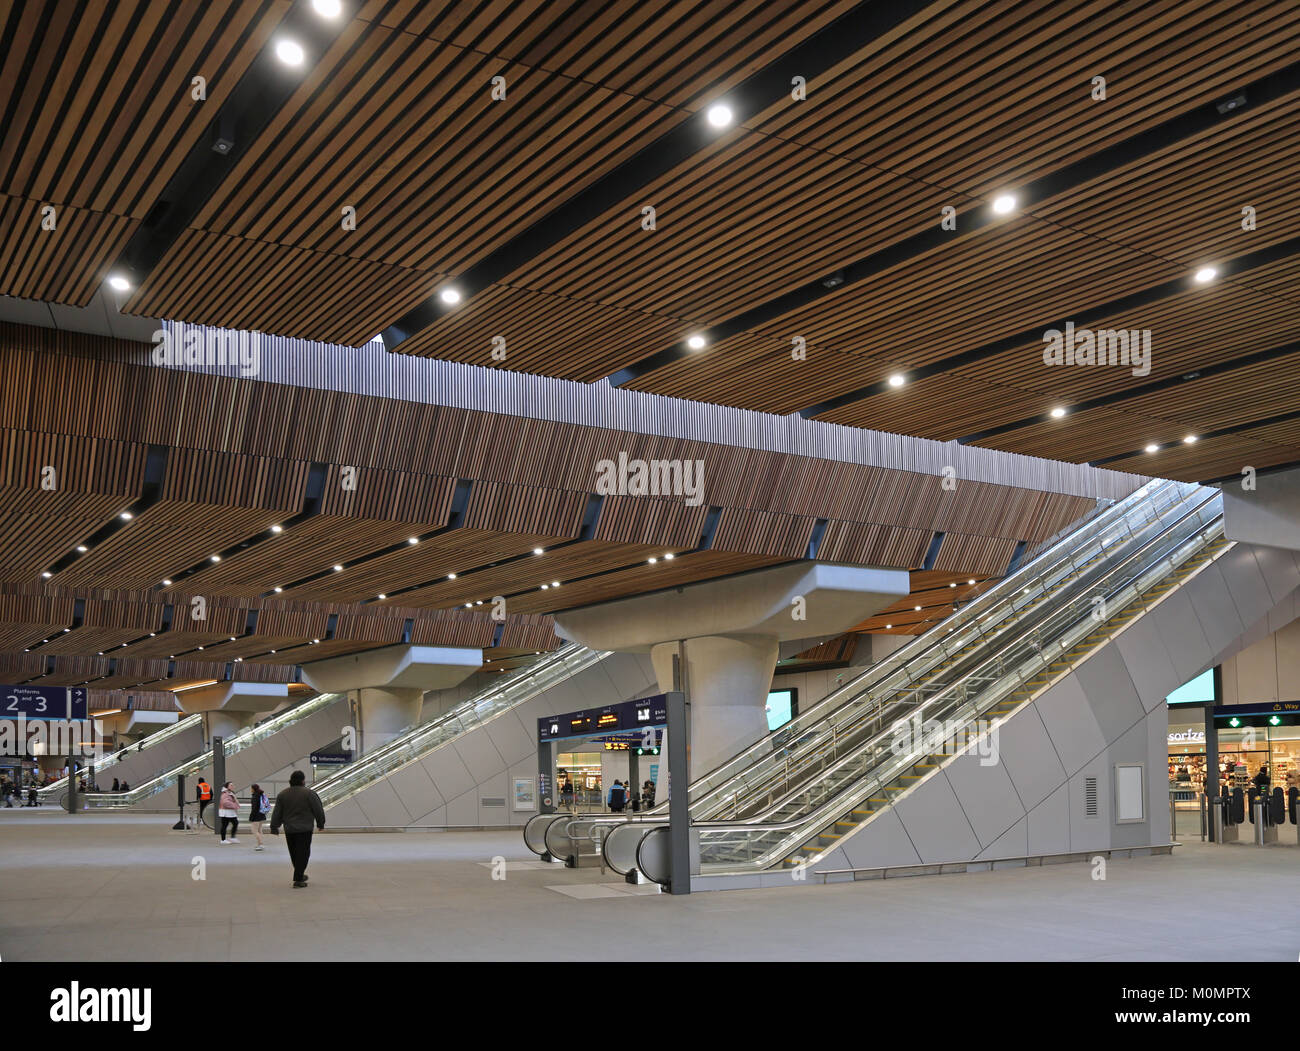 Fast menschenleer, die neue untere Bahnhofsstation am Bahnhof London Bridge, Großbritannien. Zeigt Rolltreppen und Betonpfeilern, die die Plattformen oben stützen. Stockfoto